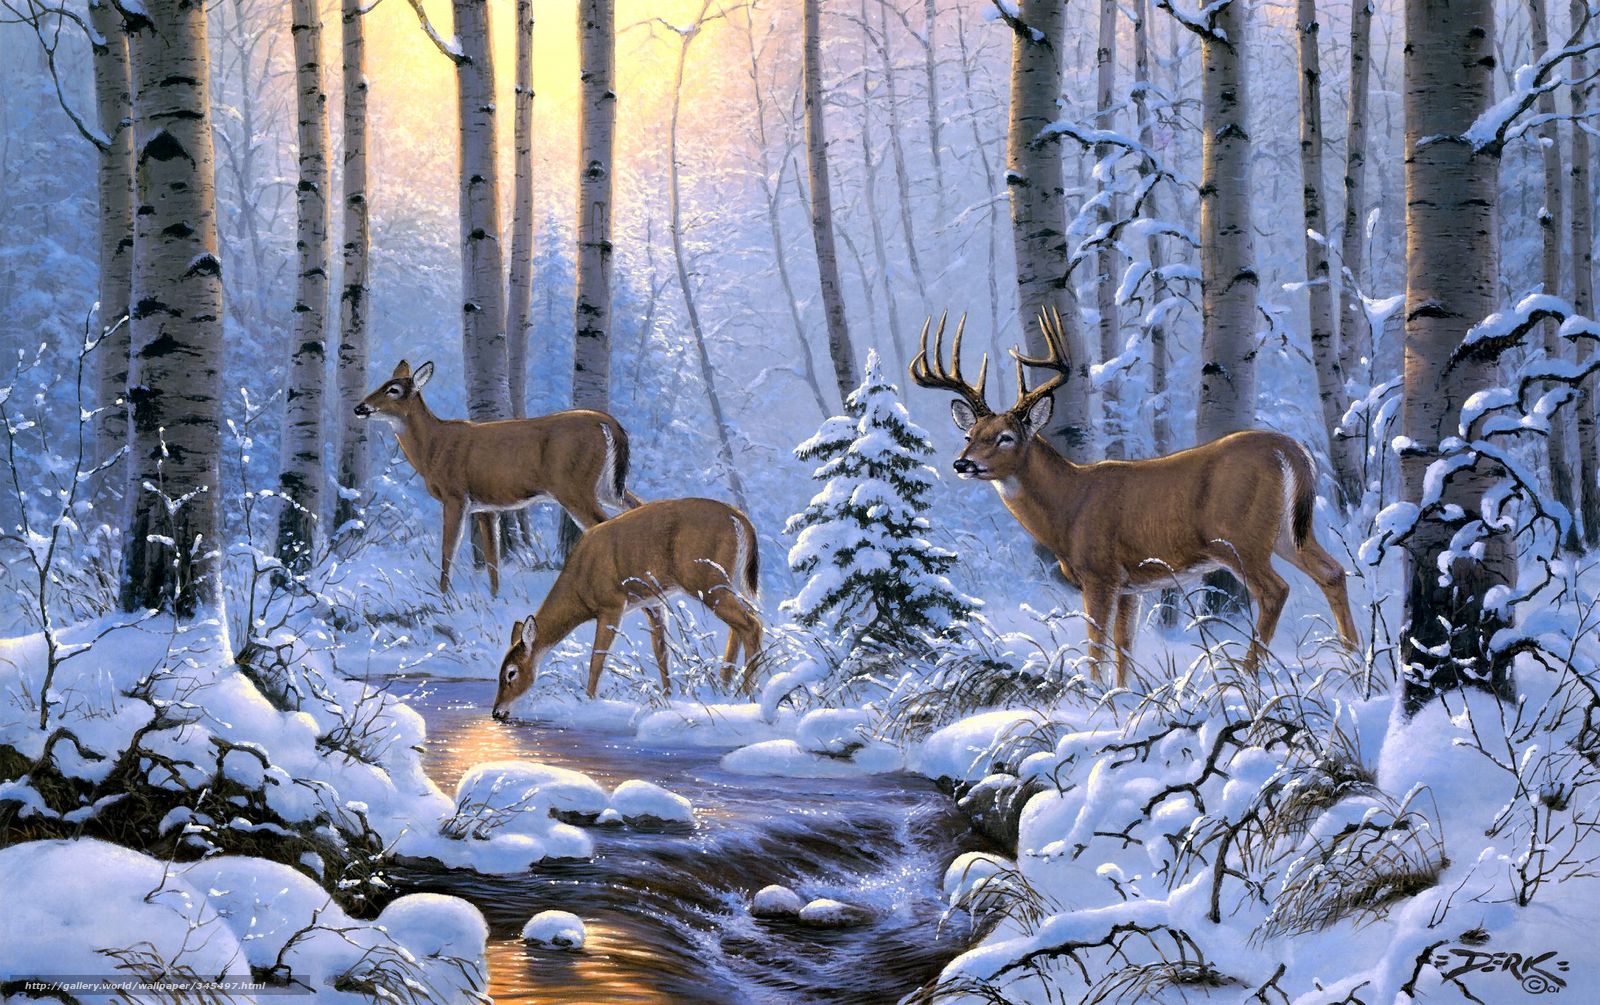 Winter Animal Scenes Wallpaper - WallpaperSafari